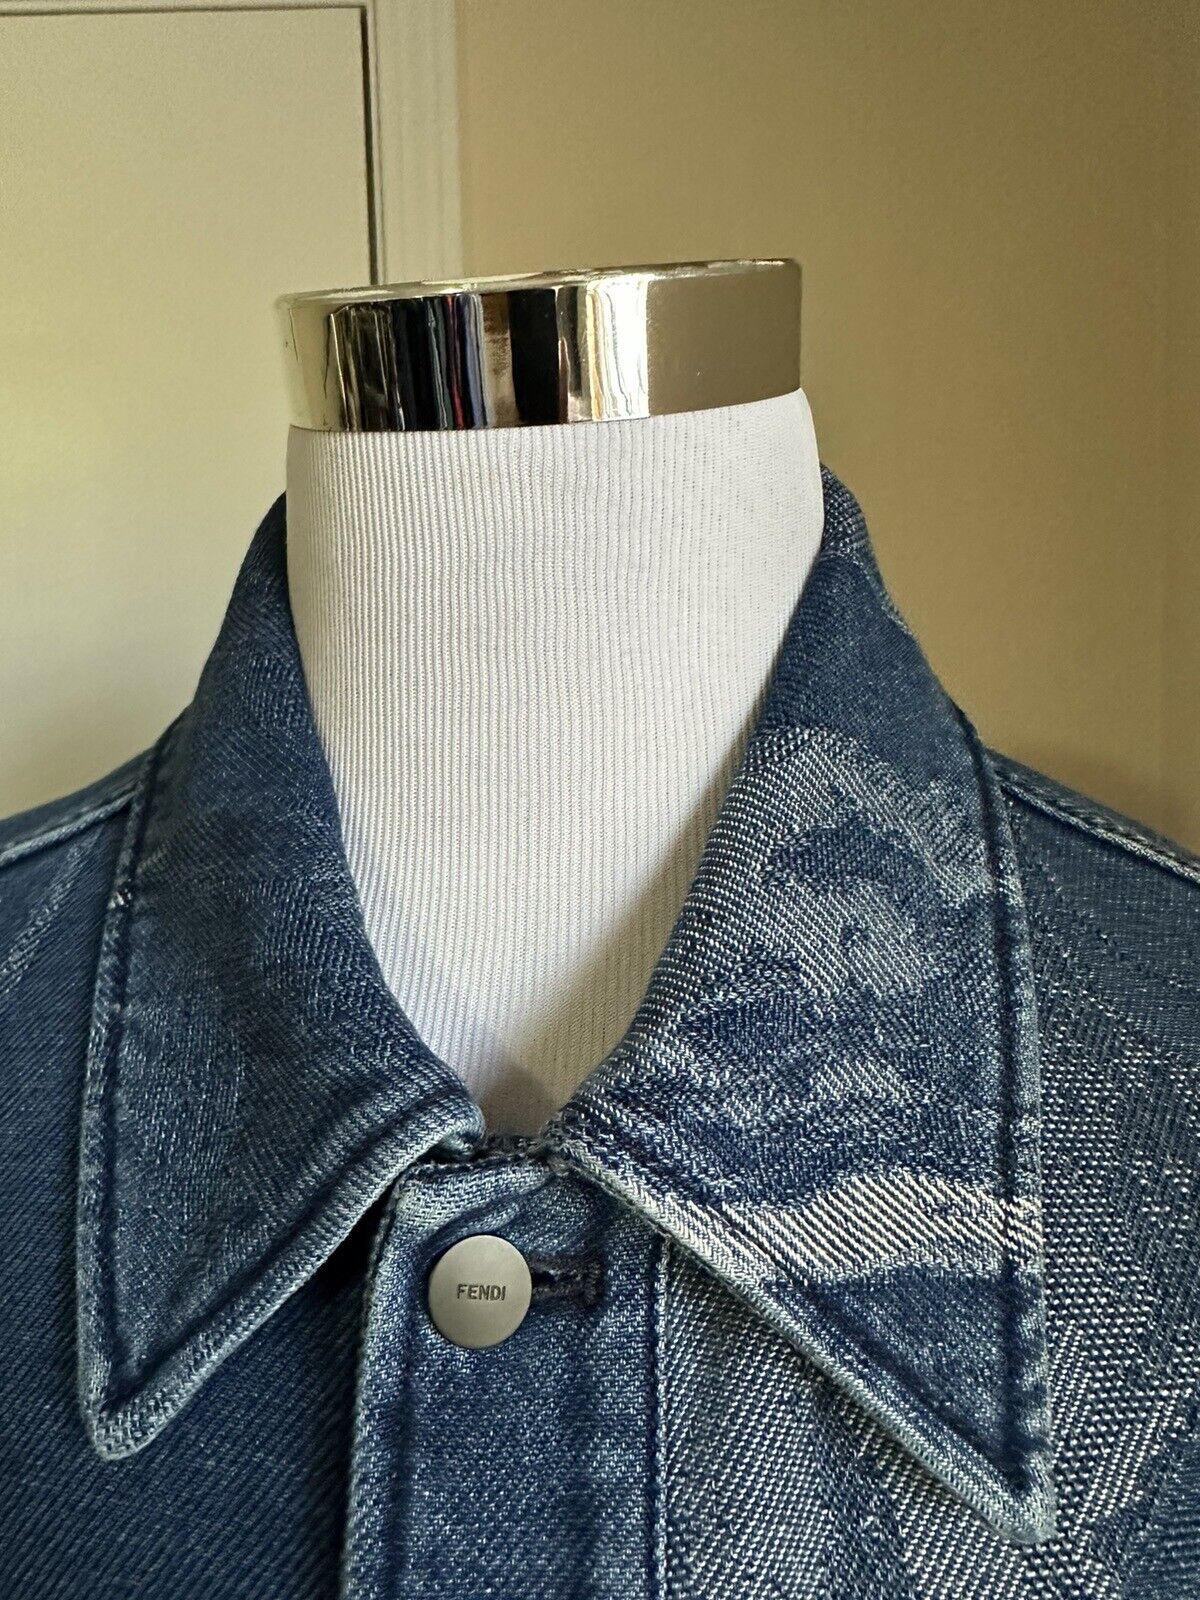 Мужская джинсовая куртка оверсайз Moonlight Fendi 42 US/52 Ita FW1131, NWT 1950 долларов США